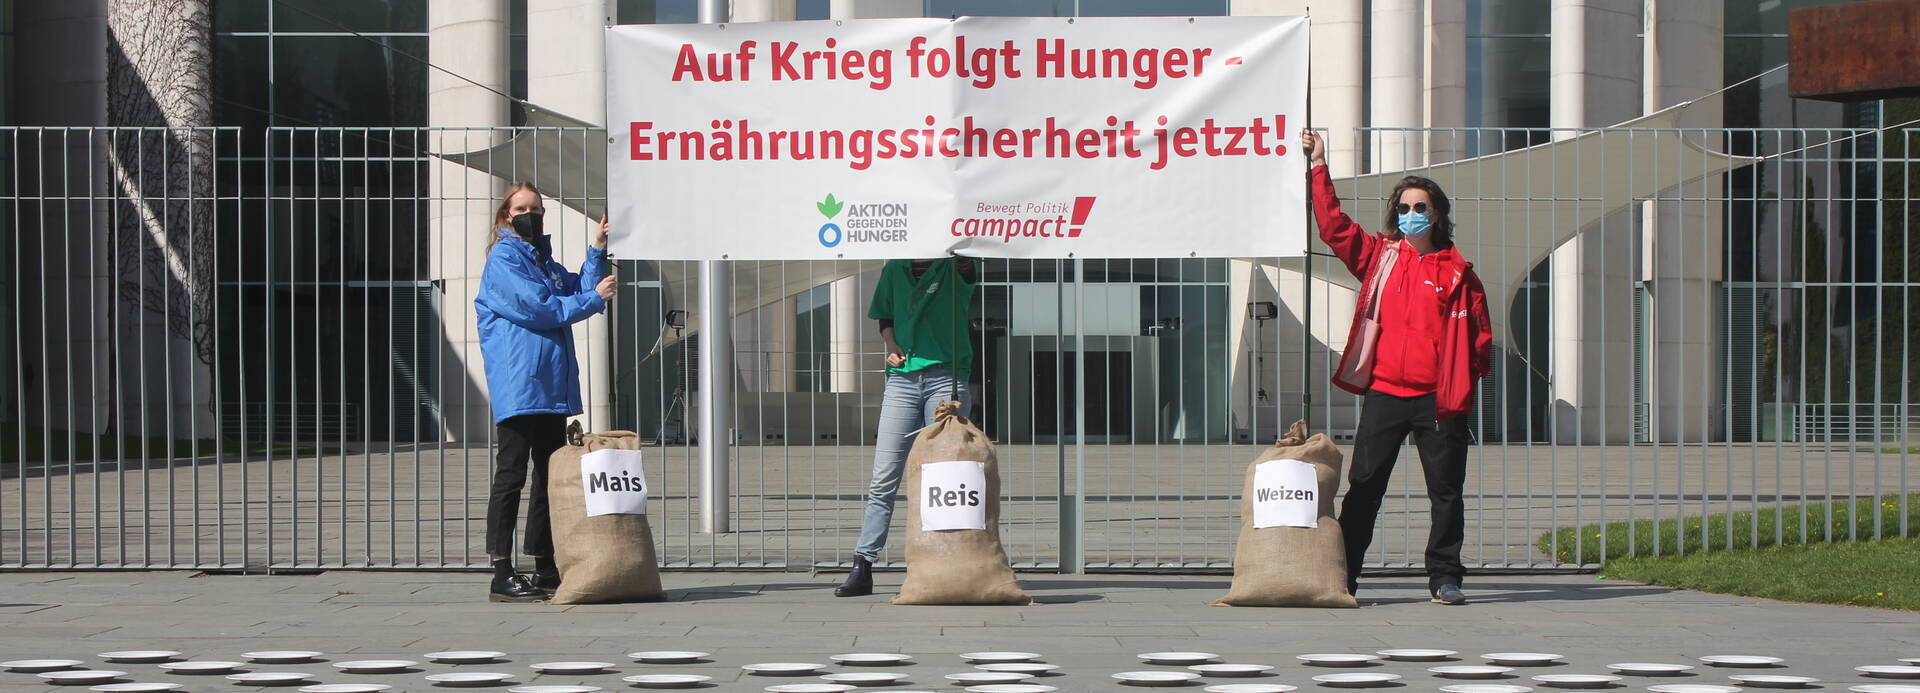 Drei Aktivist*innen von Aktion gegen den Hunger und Campact mit Banner "Auf Krieg folgt Hunger – Ernährungssicherheit jetzt!", mit drei Säcken Mais, Reis und Weizen vor 282 Tellern.